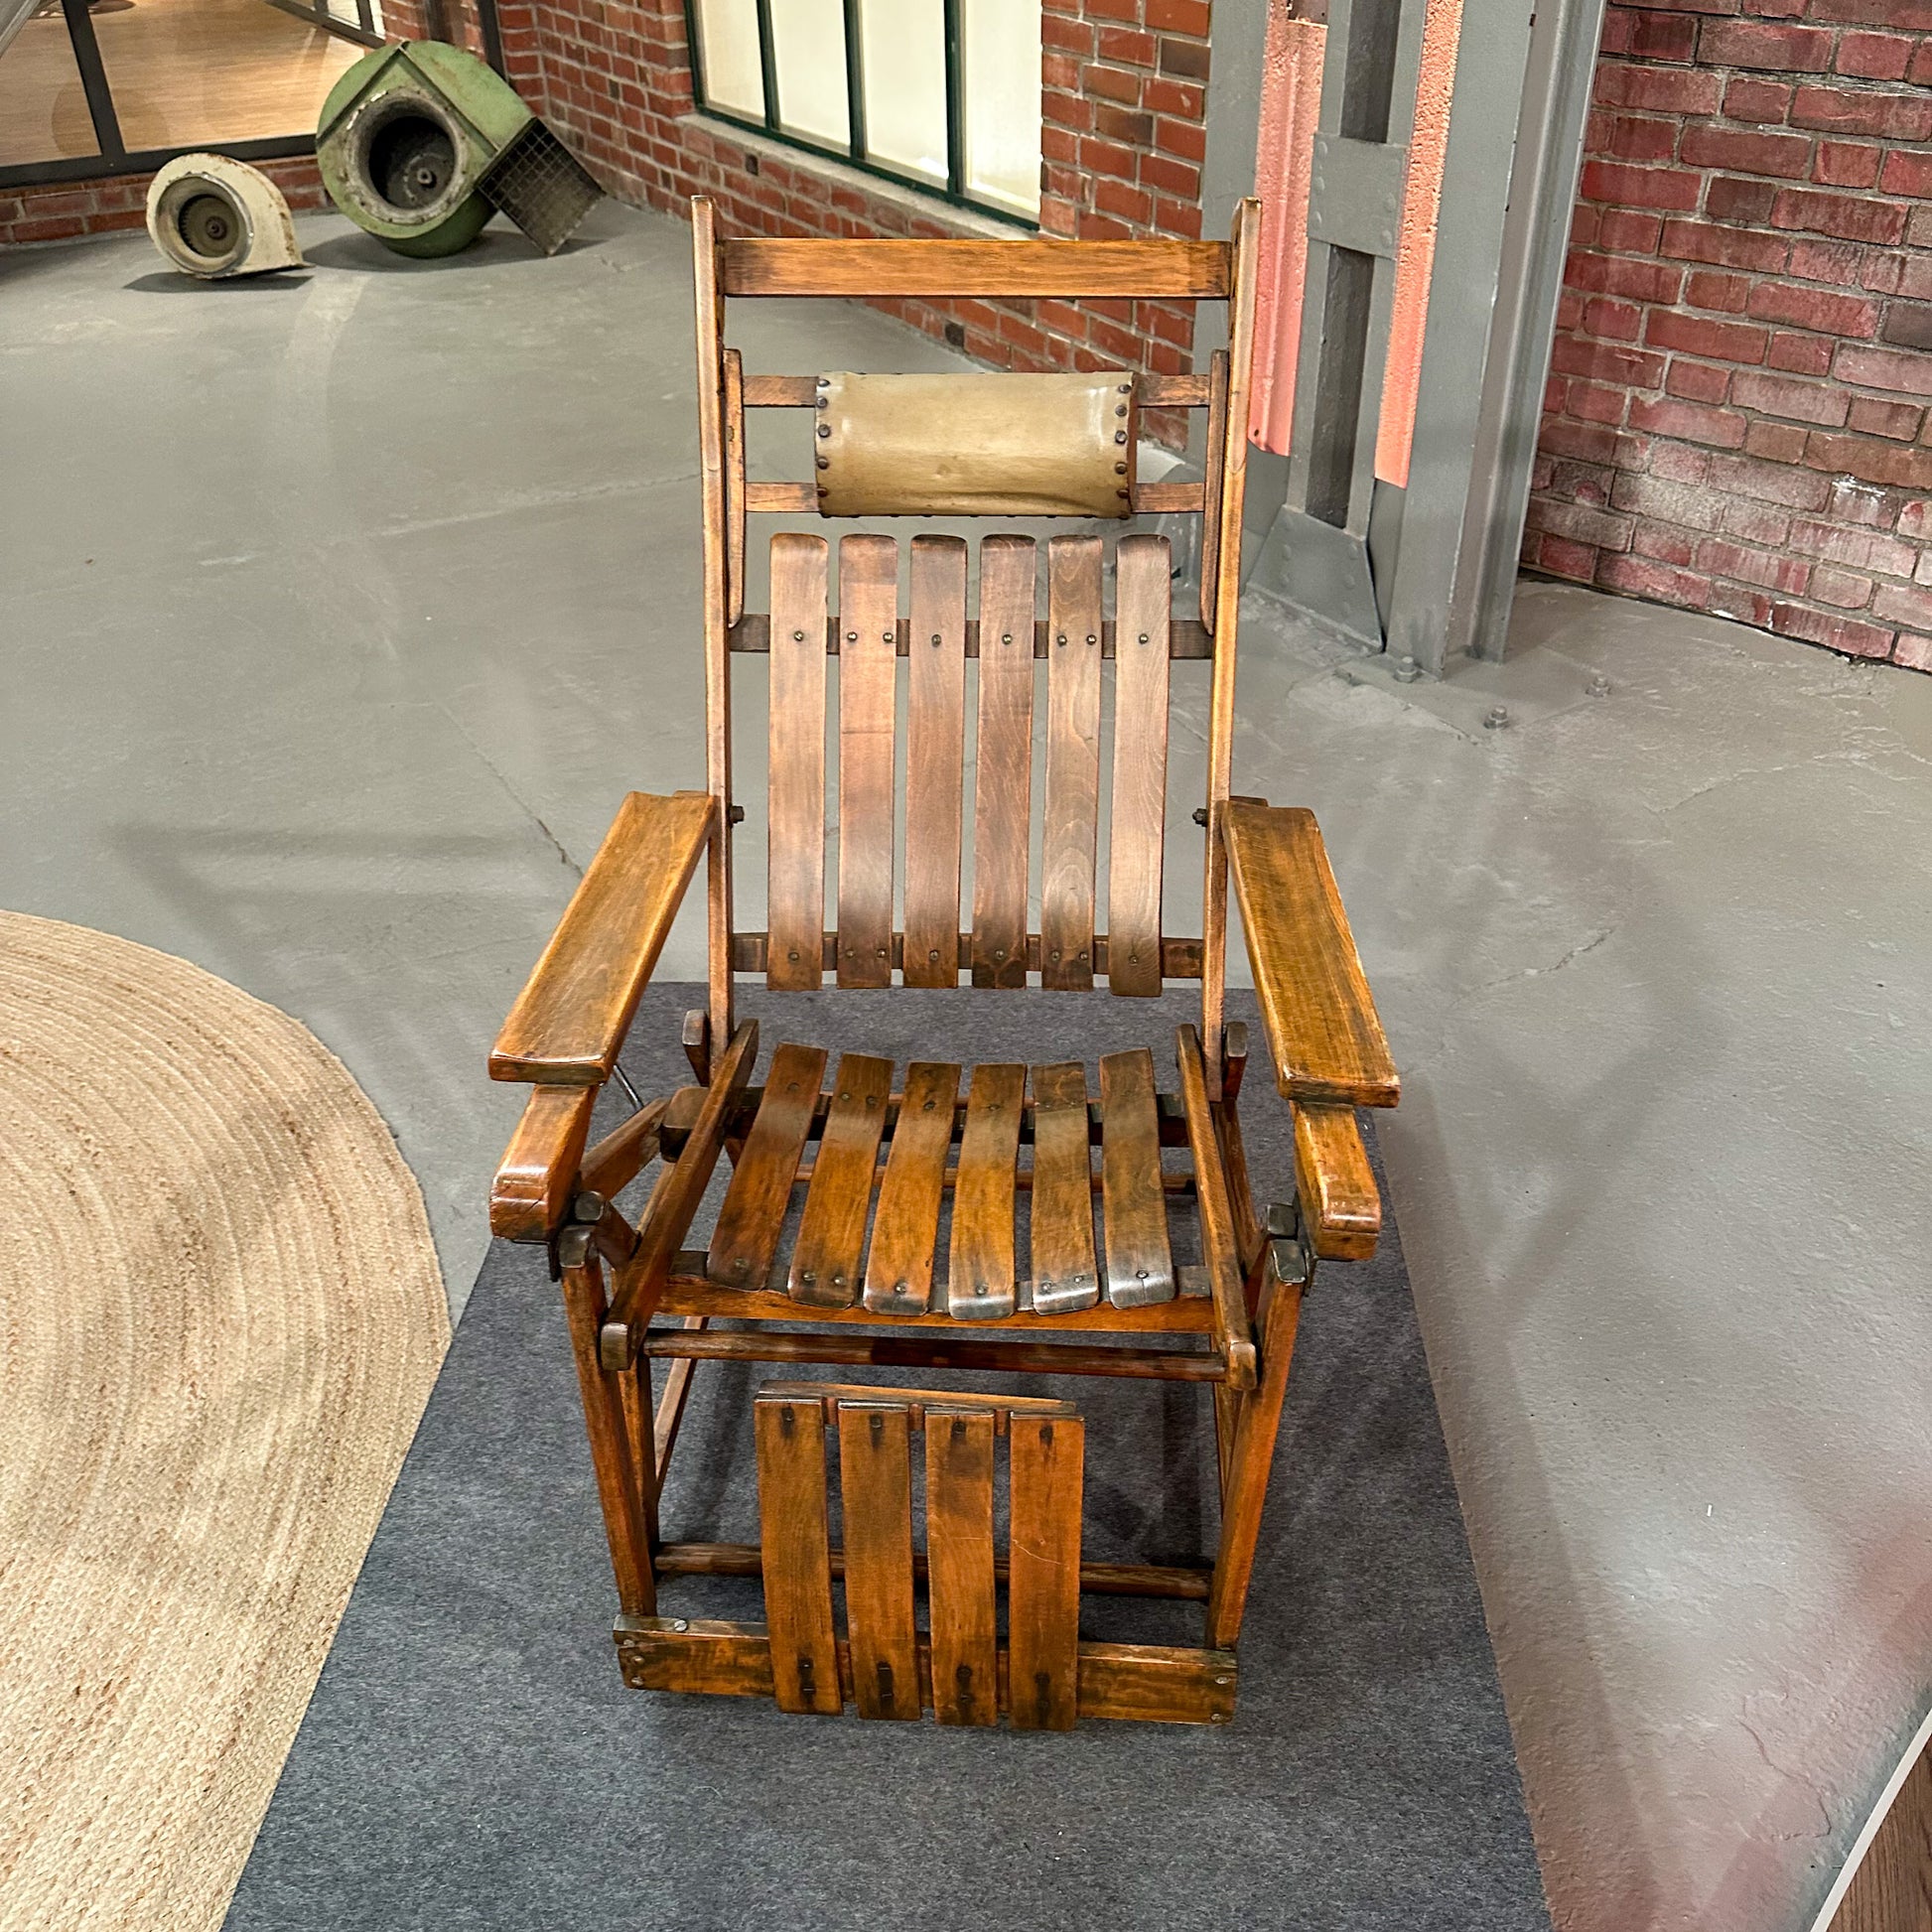 Liegestuhl „Siesta Medizinal“ von Hands und Wassili Luckardt für Thonet, 1930er Jahre, restauriert - aus Bares für Rares 2023 - Esther-Ollick.shop